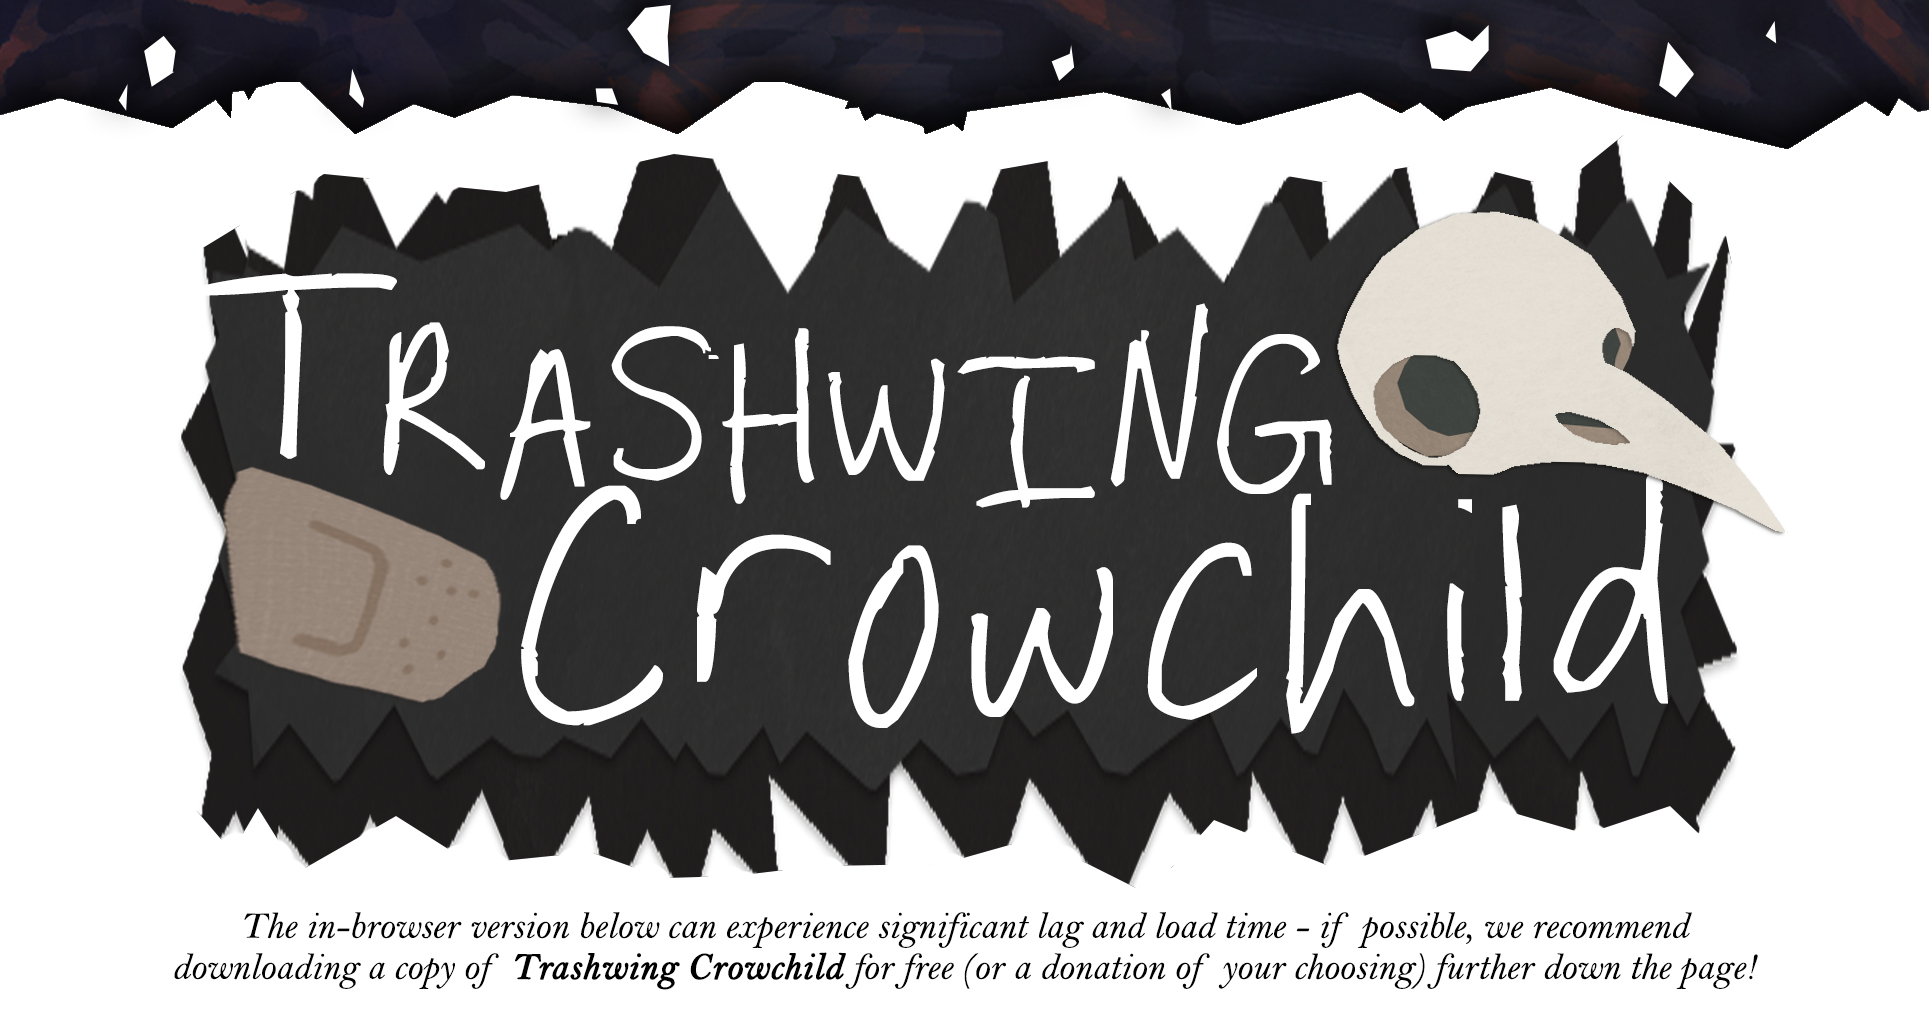 Trashwing Crowchild